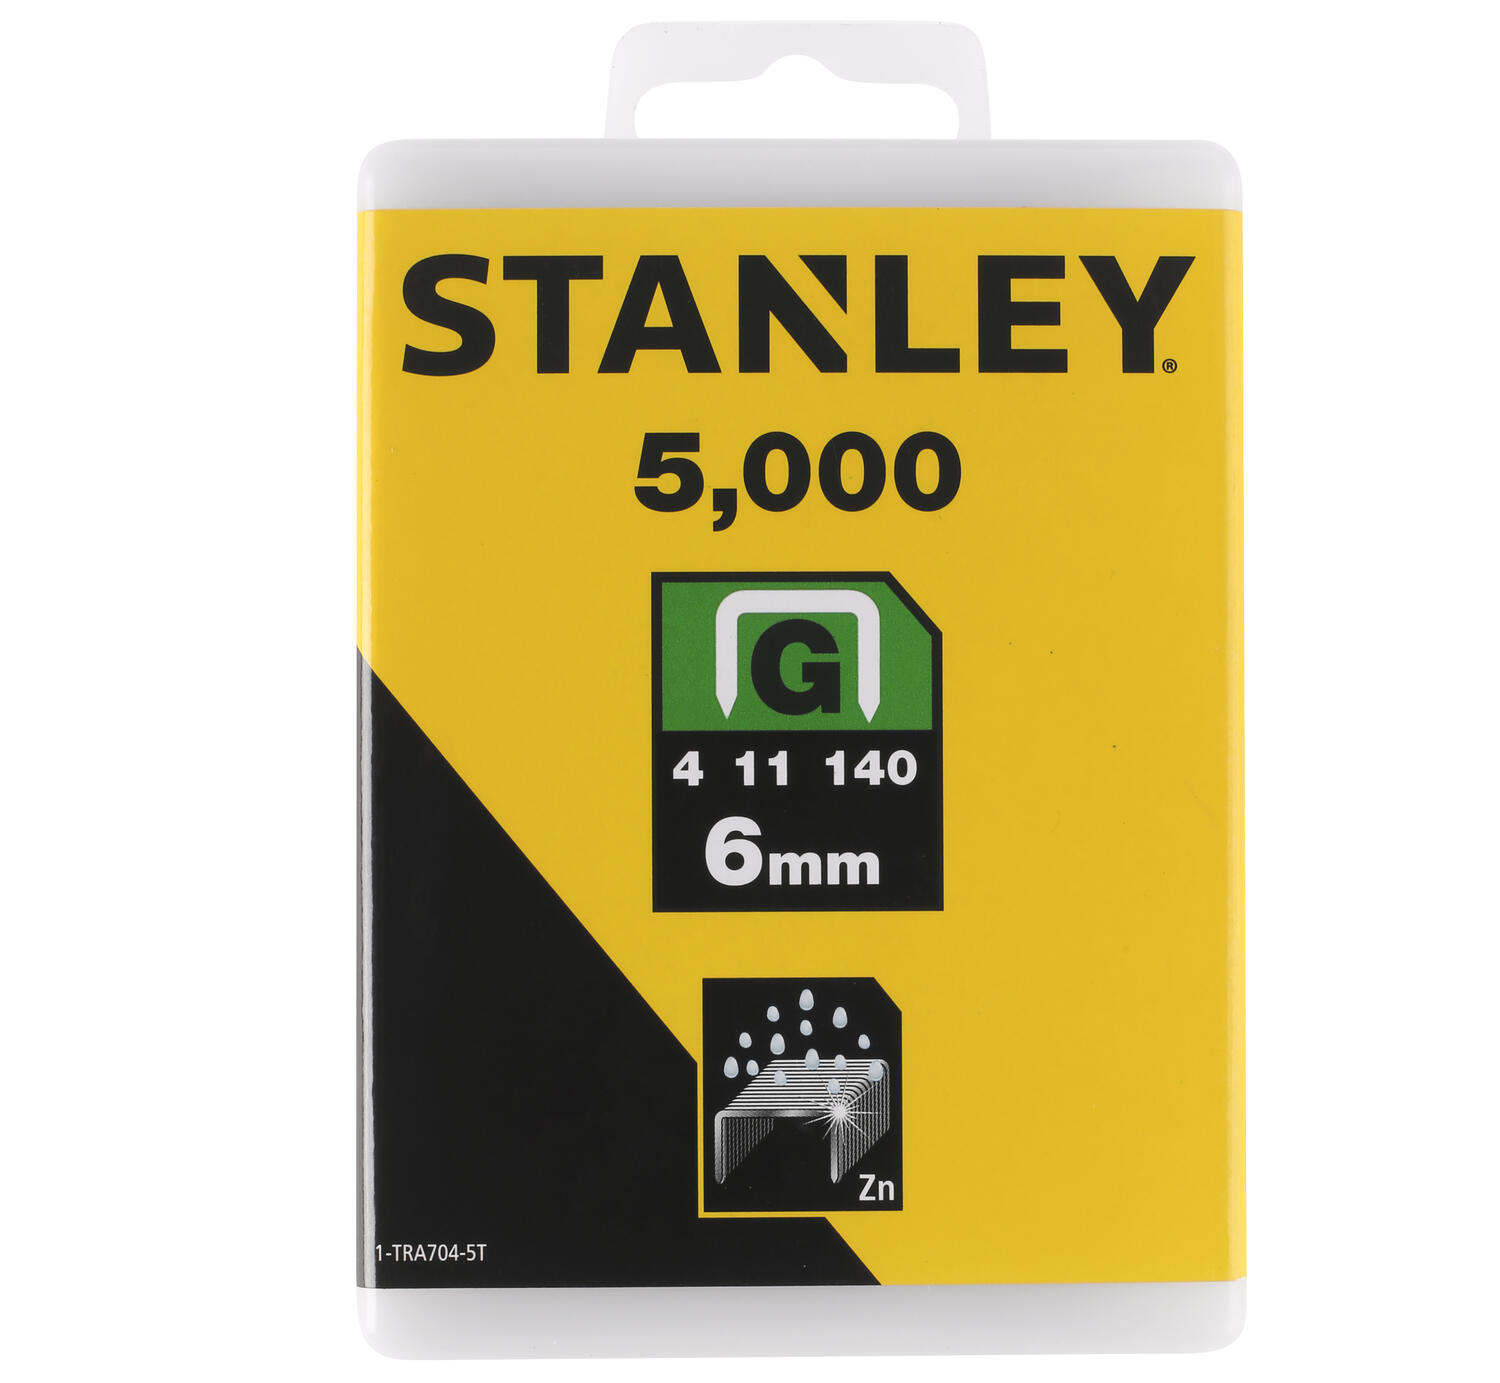 Stanley nieten type G 6mm 5000 stuks